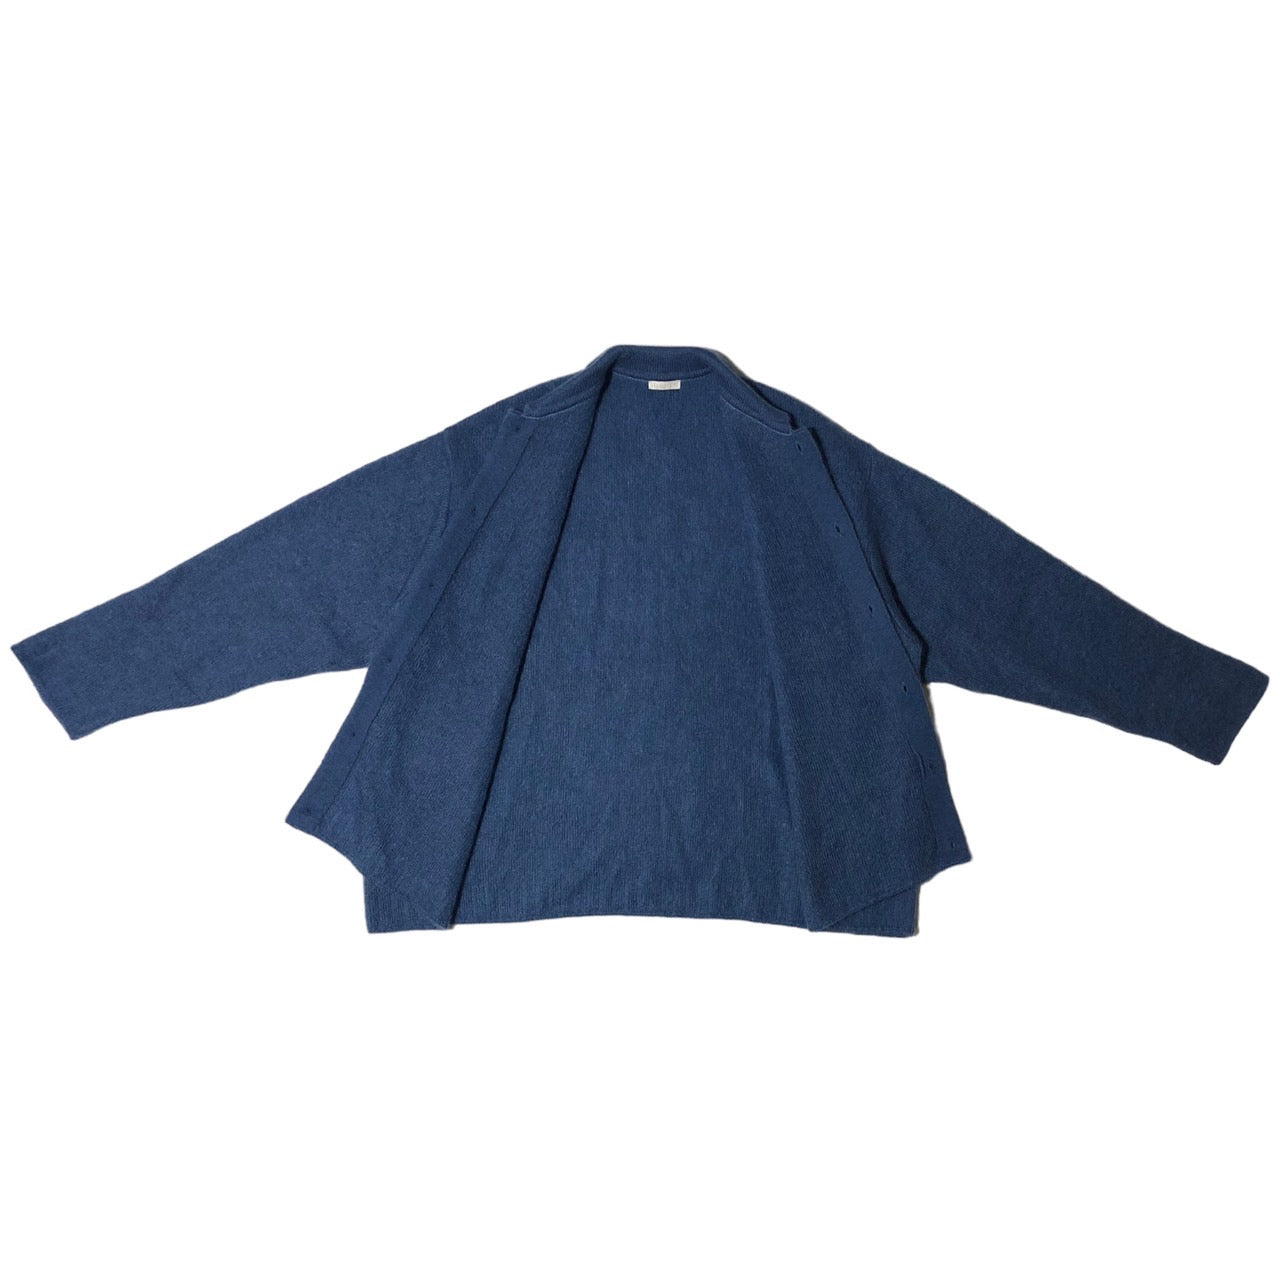 Blanc YM(ブランワイエム) 23AW kid mohair knit shirts/キッドモヘアニットシャツ bl-23a-kmks SIZE S サックスブルー 完売品